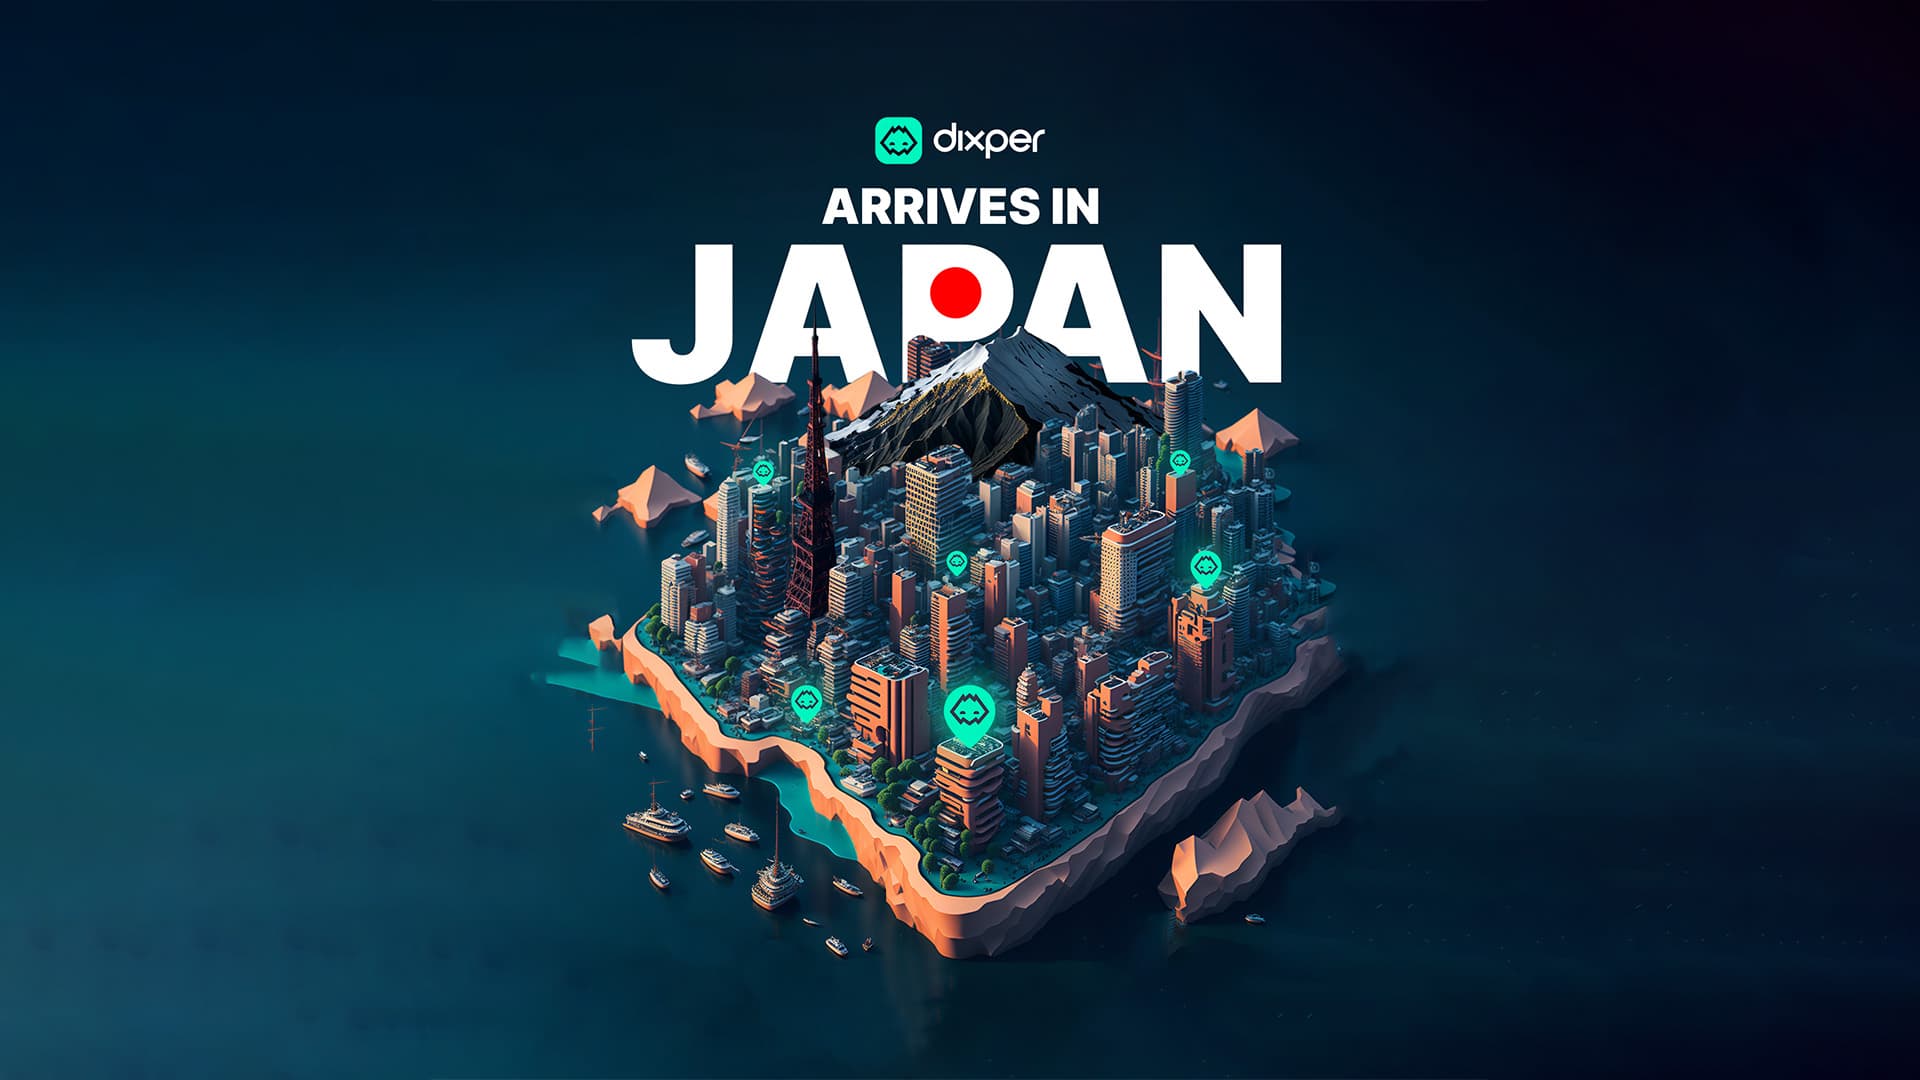 Dixper Arrives in Japan